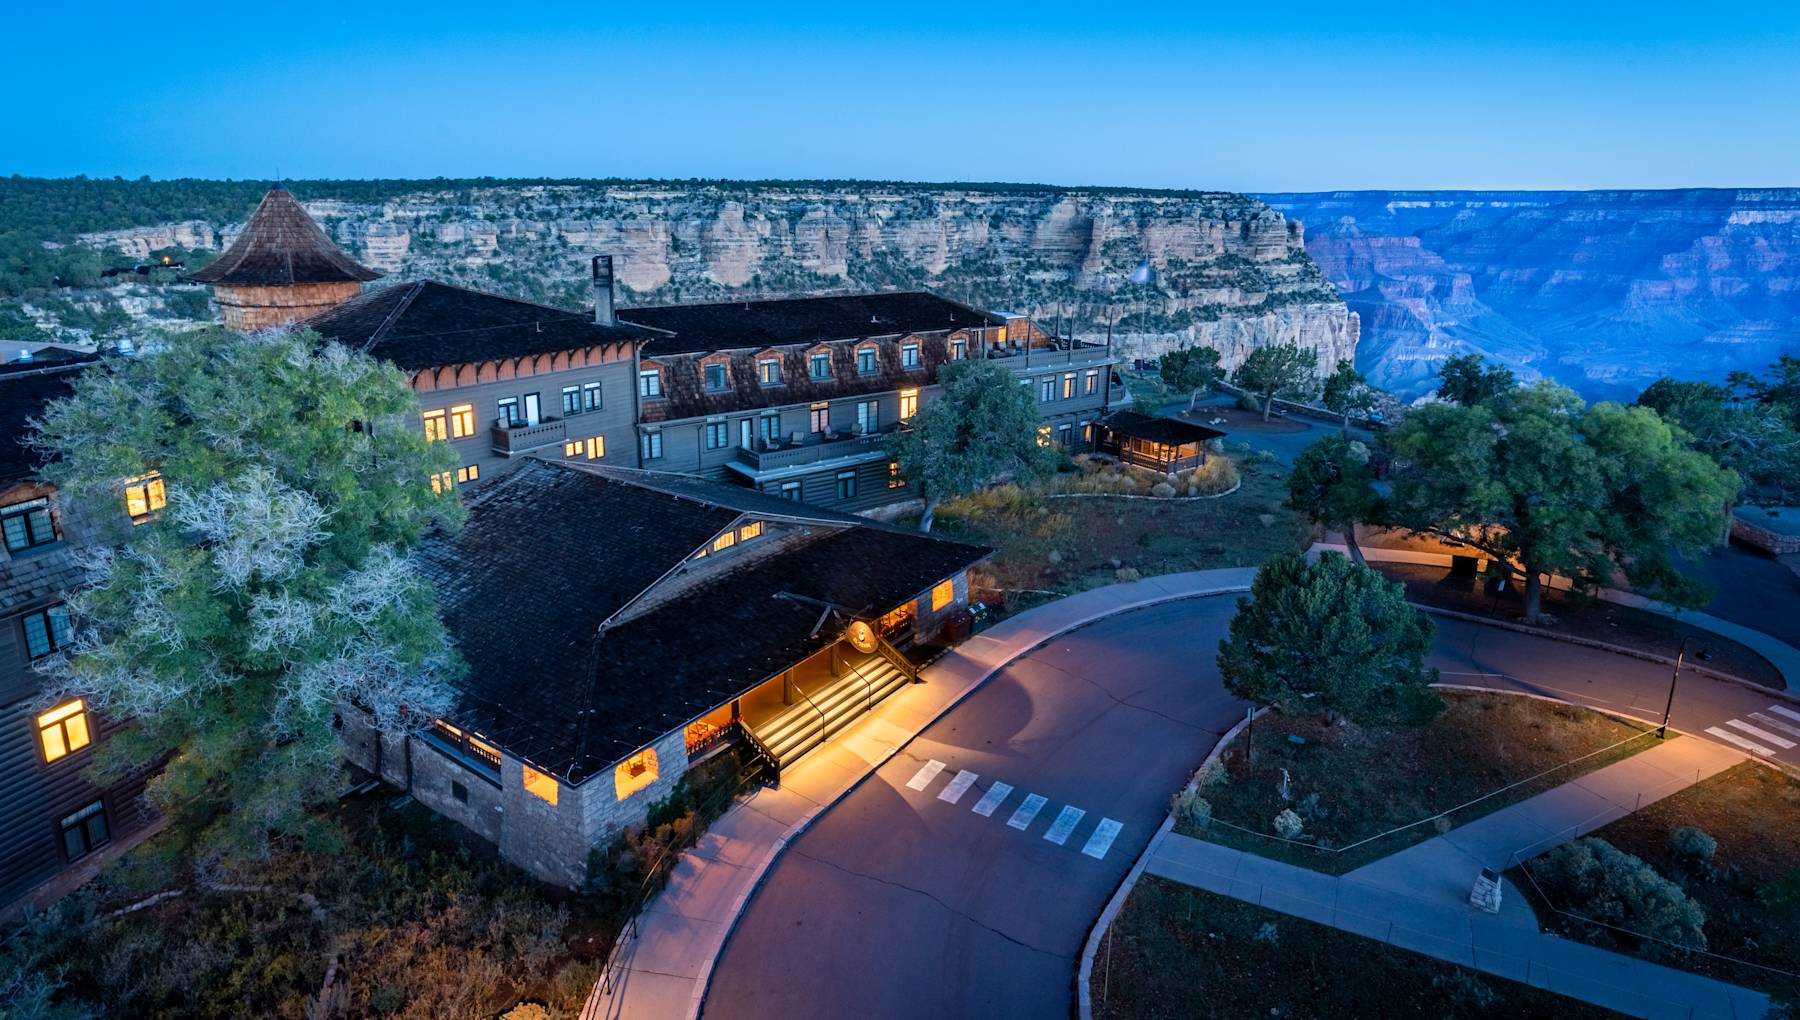 El Tovar Hotel | Grand Canyon National Park Lodges